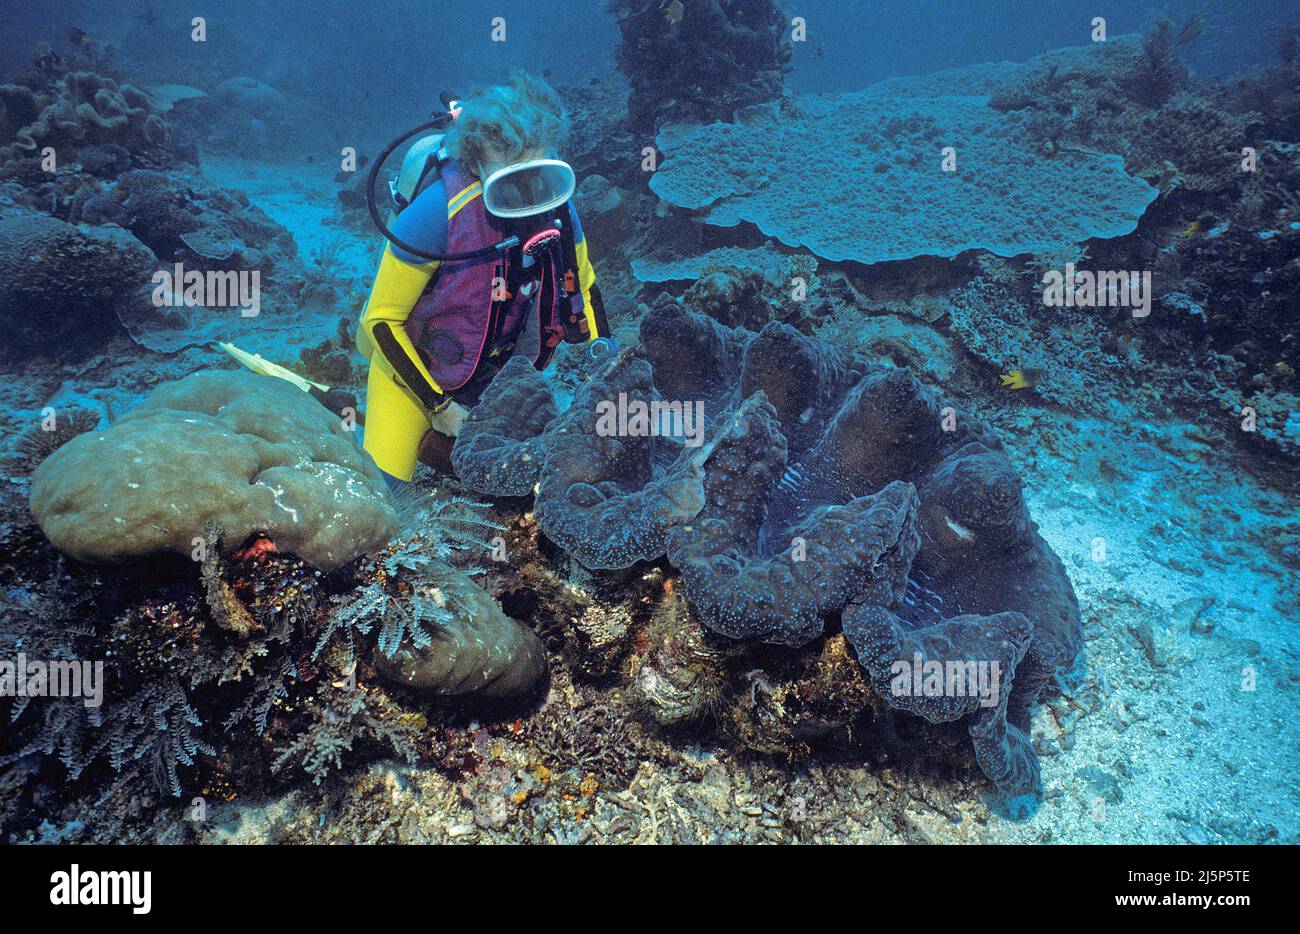 Taucher schaut auf eine große echte Riesenmuschel oder Killermuschel (Tridacna gigas), offen, Irian Jaya, Halmahera Meer, Indonesien, Asien Stockfoto